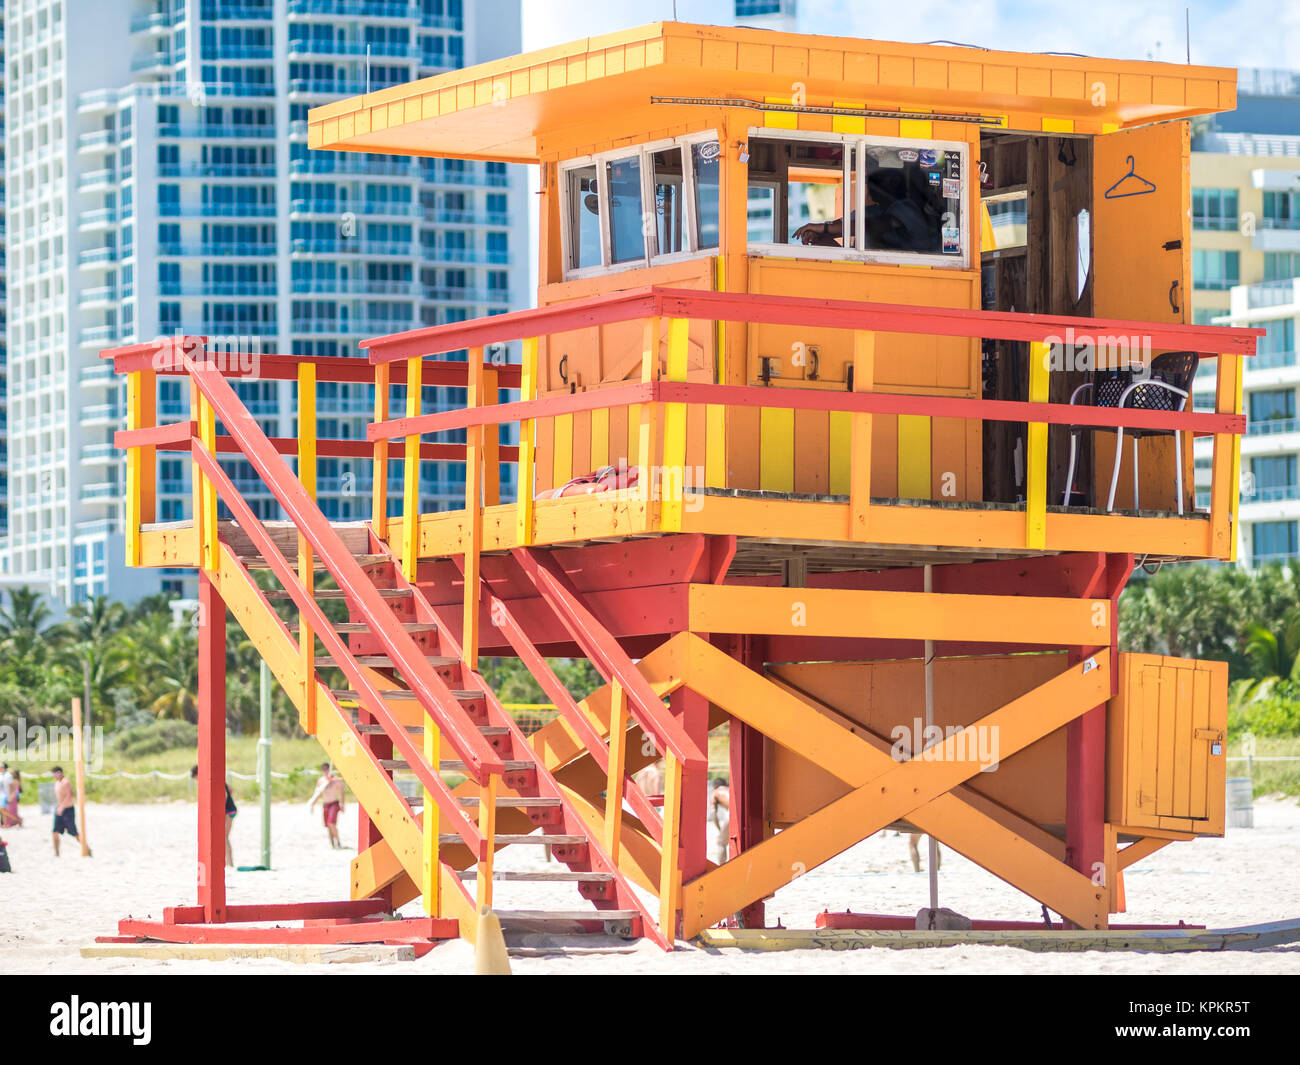 MIAMI, USA - 6 septembre 2015 : les tours sont utilisées pour surveiller et superviser les nageurs et font partie de l'architecture traditionnels de Miami. Banque D'Images